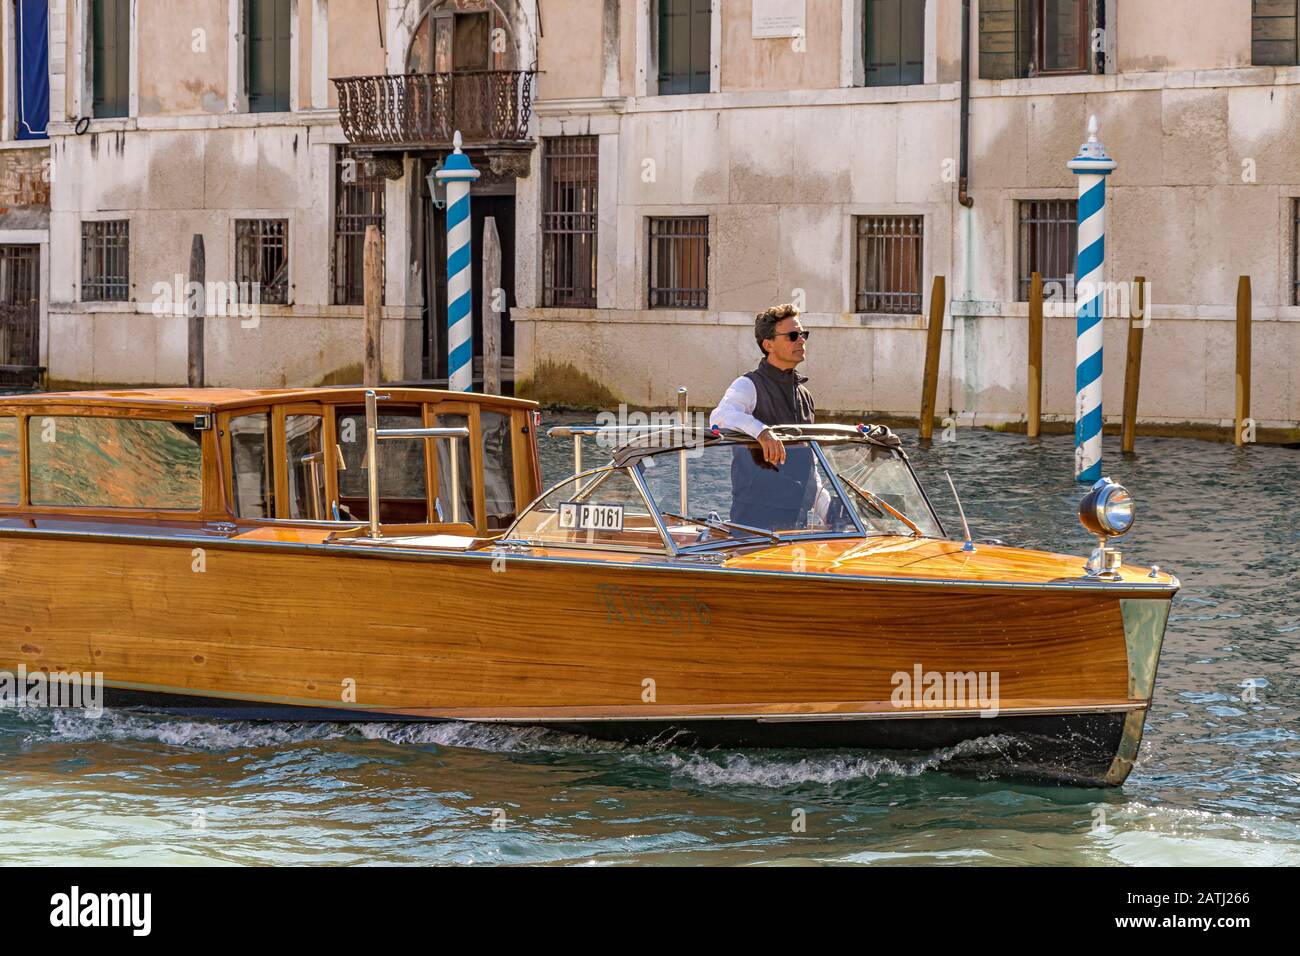 A Venice Water taxi cruising along a Canal ,Venice,Italy Stock Photo